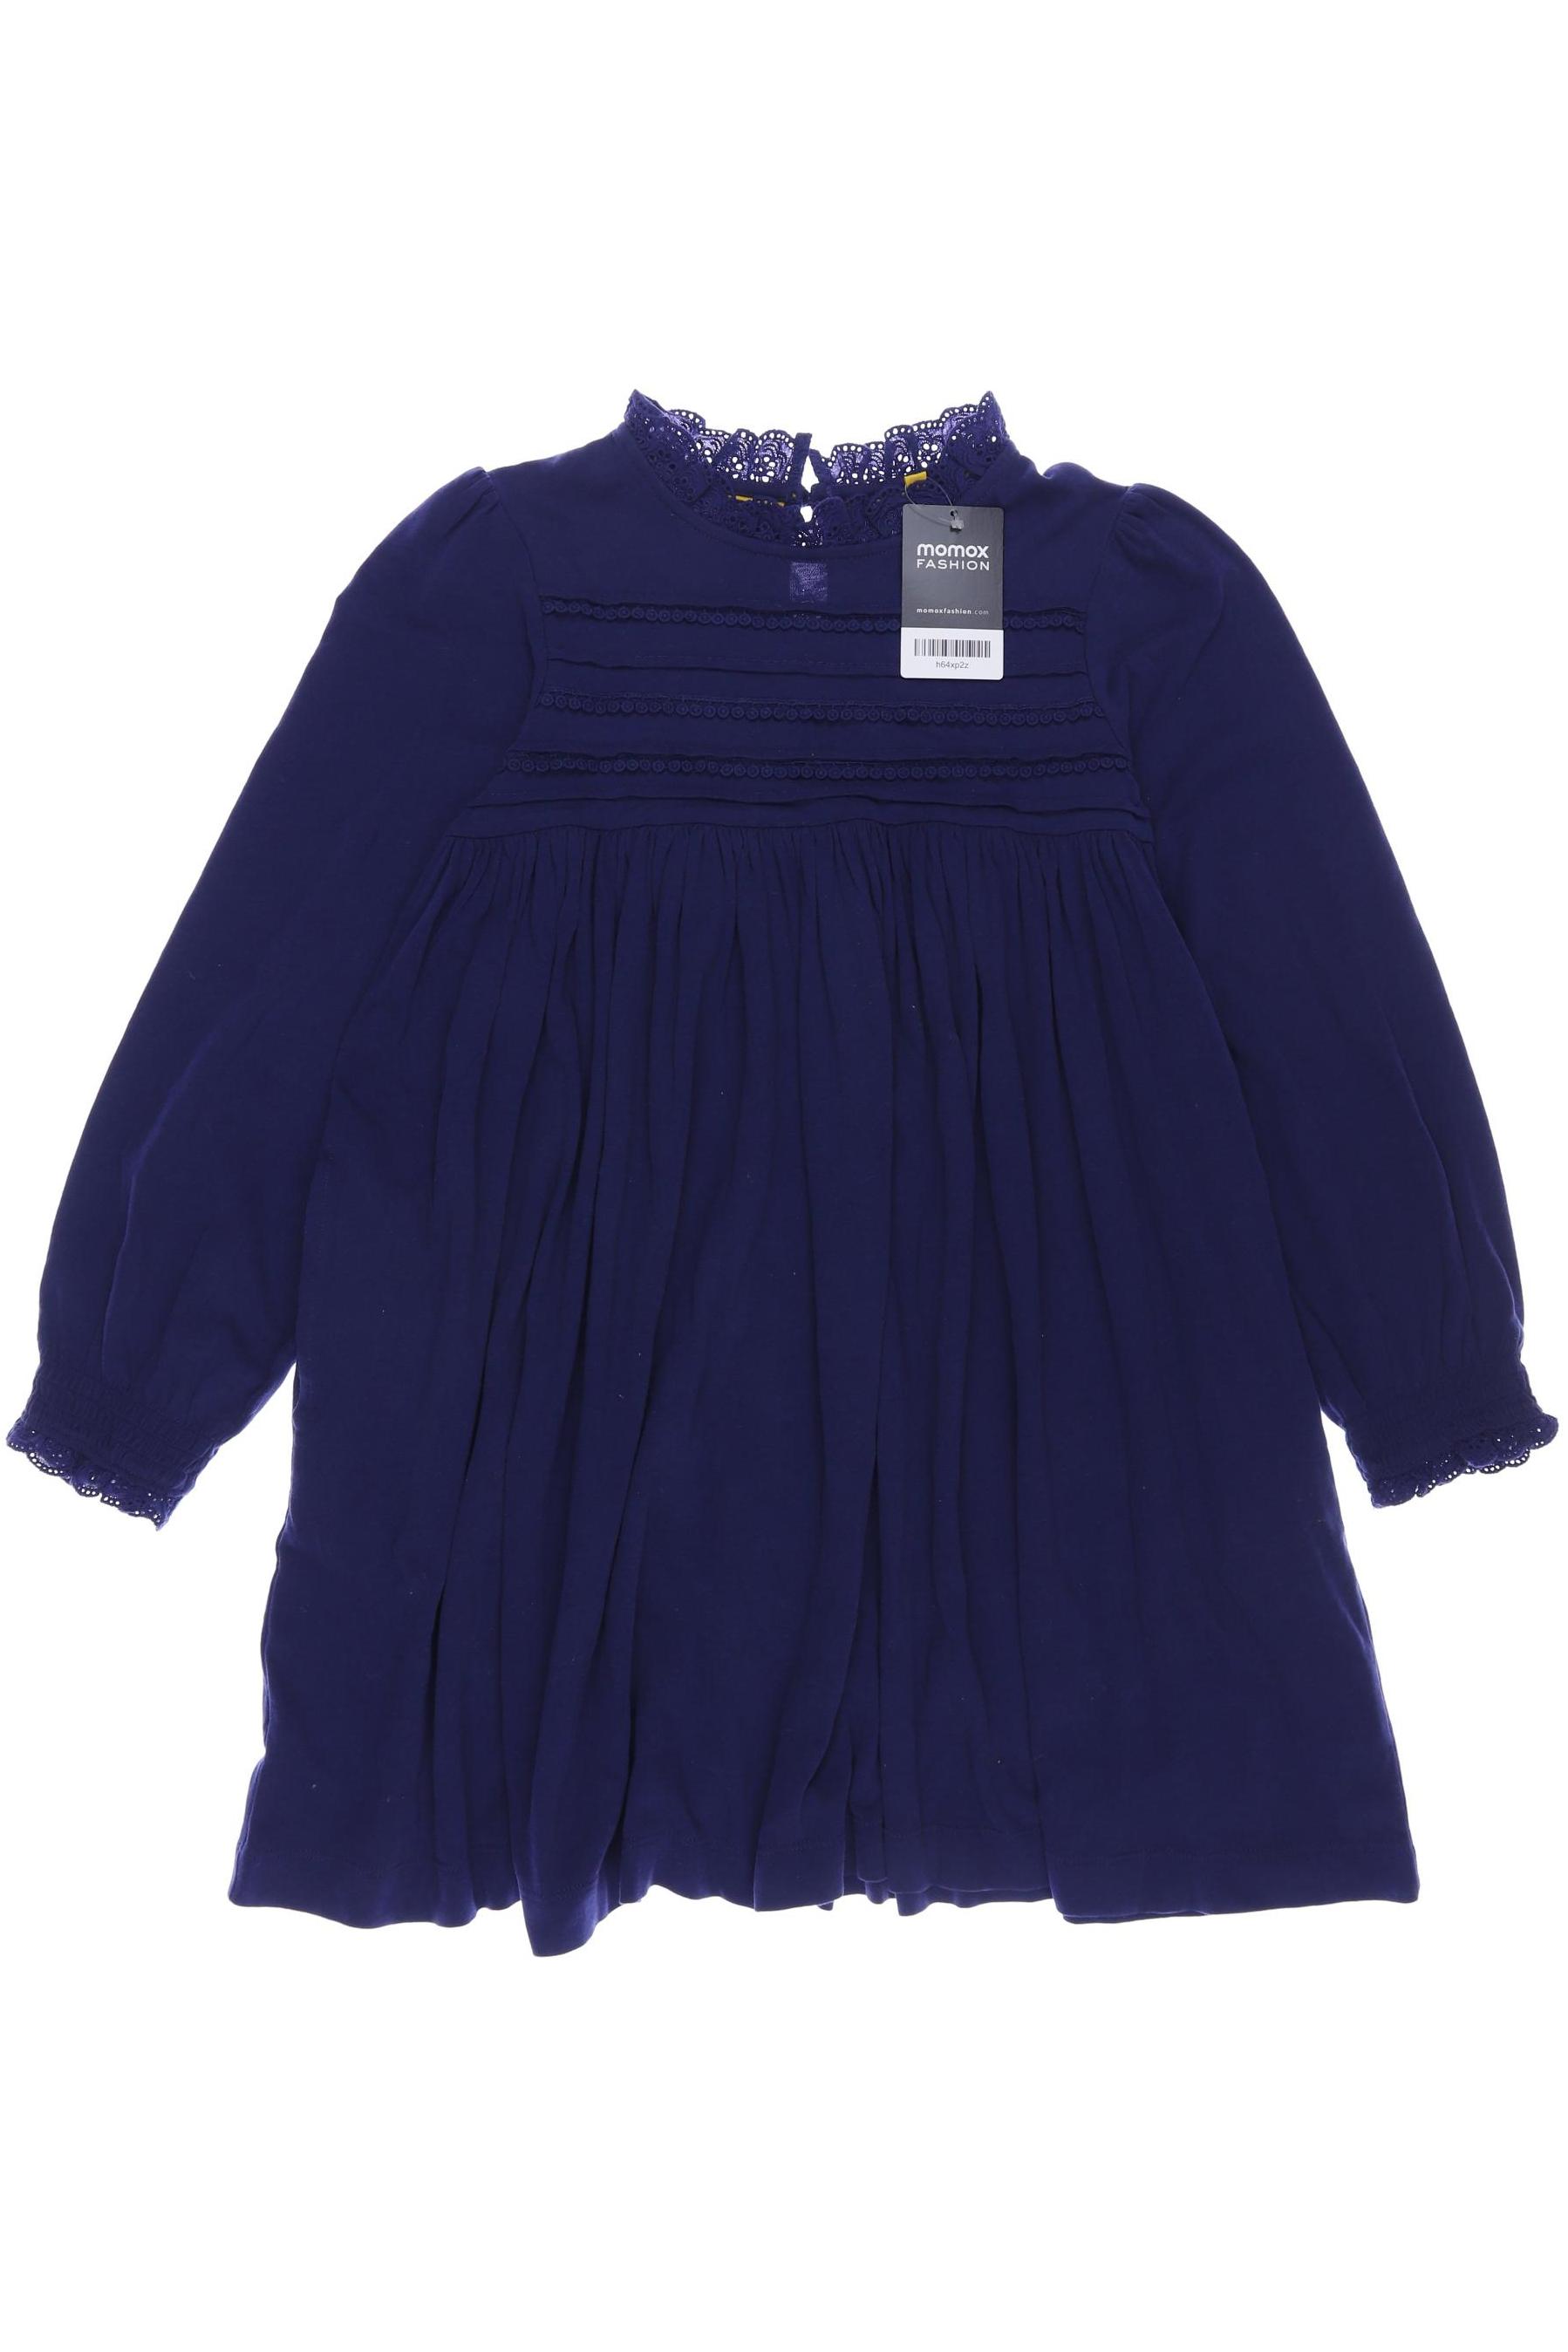 Mini Boden Damen Kleid, marineblau, Gr. 140 von Mini Boden